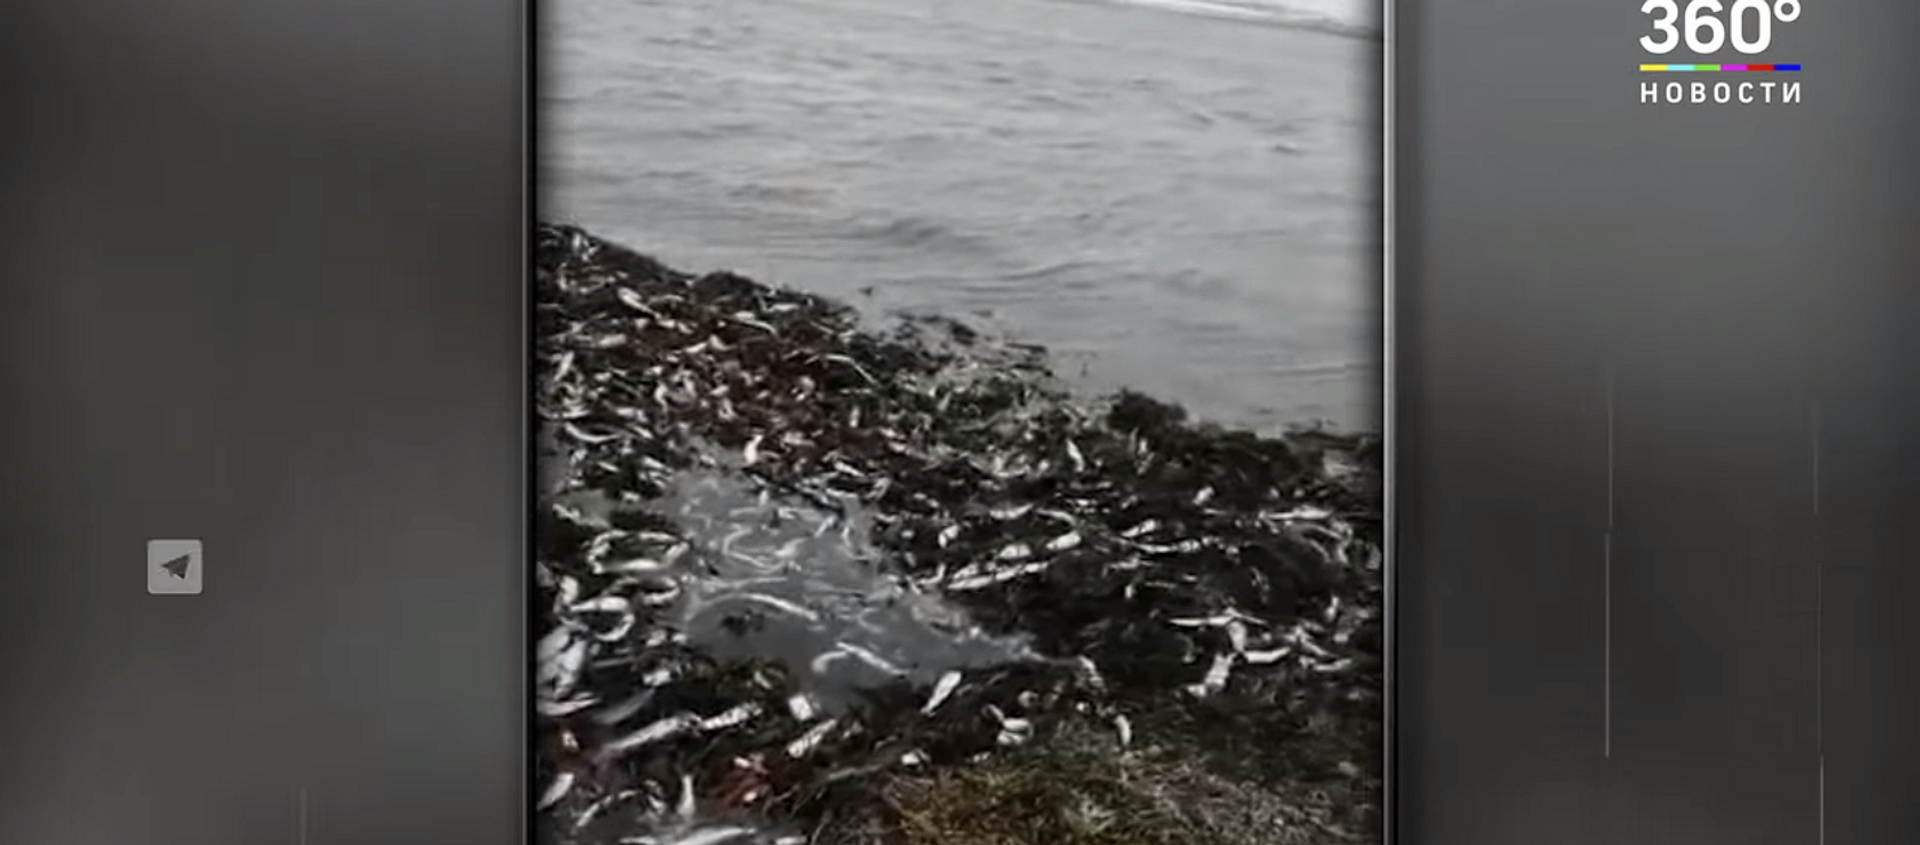 Море рыбы: усыпанные сельдью берега Сахалина сняли на видео - Sputnik Lietuva, 1920, 05.04.2021